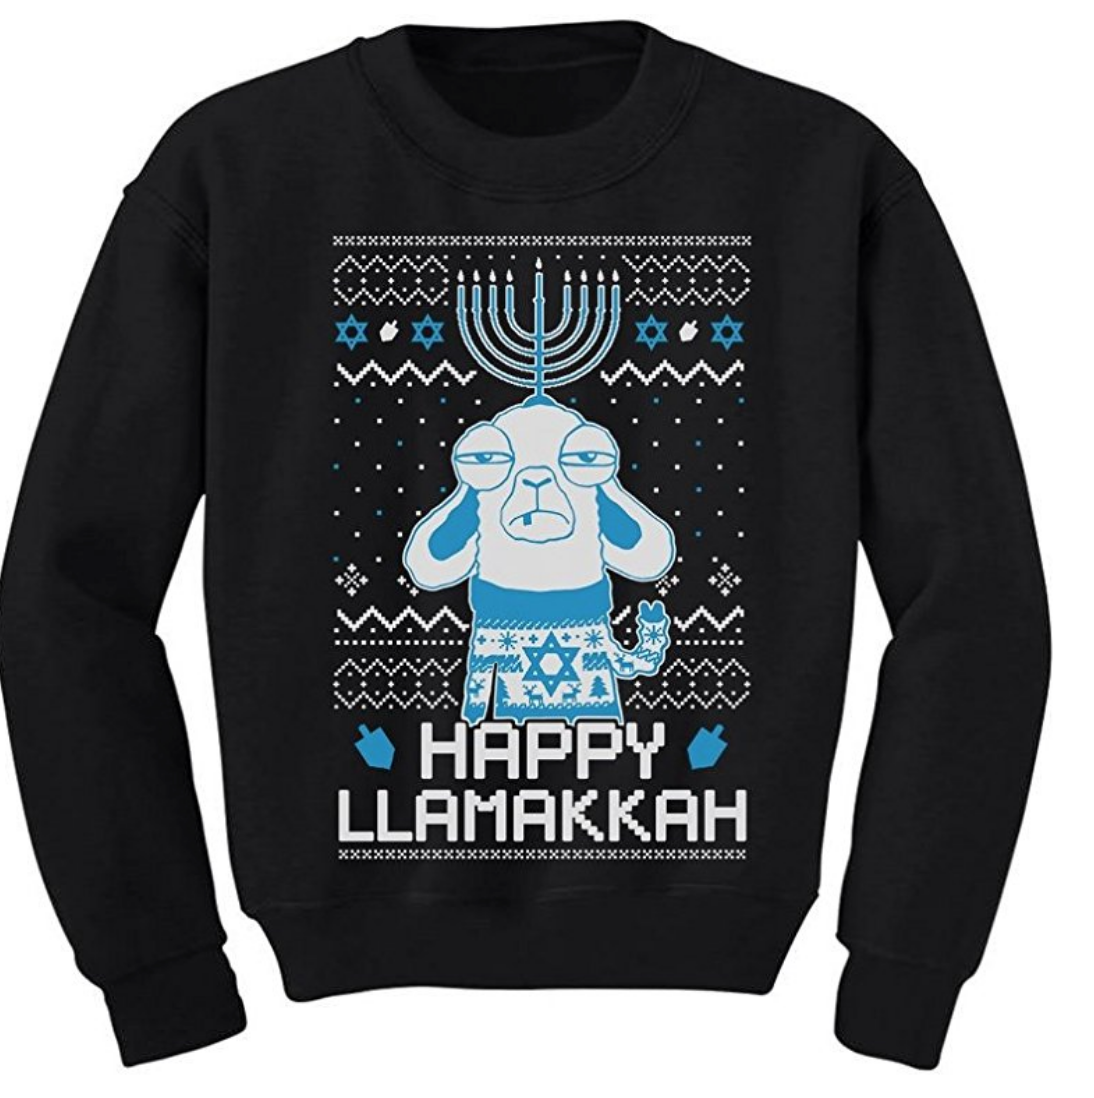 https://www.amazon.com/teestars-hanukkah-llamakkah-sweatshirt-medium/dp/b077h2cg34/？标签＝K苹果beplayVELLY-20